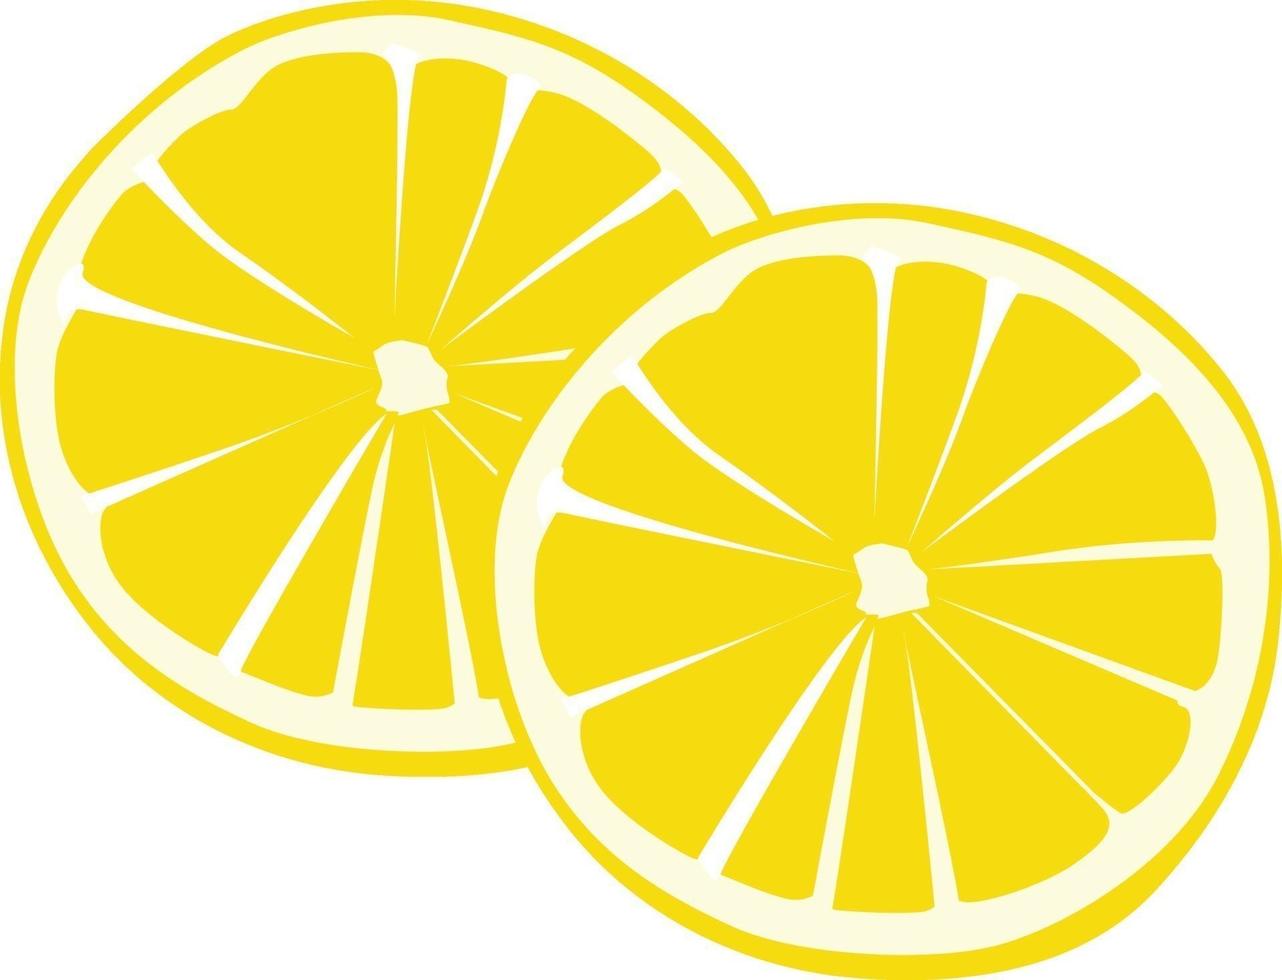 citrons coupés en tranches, illustration, vecteur sur fond blanc.